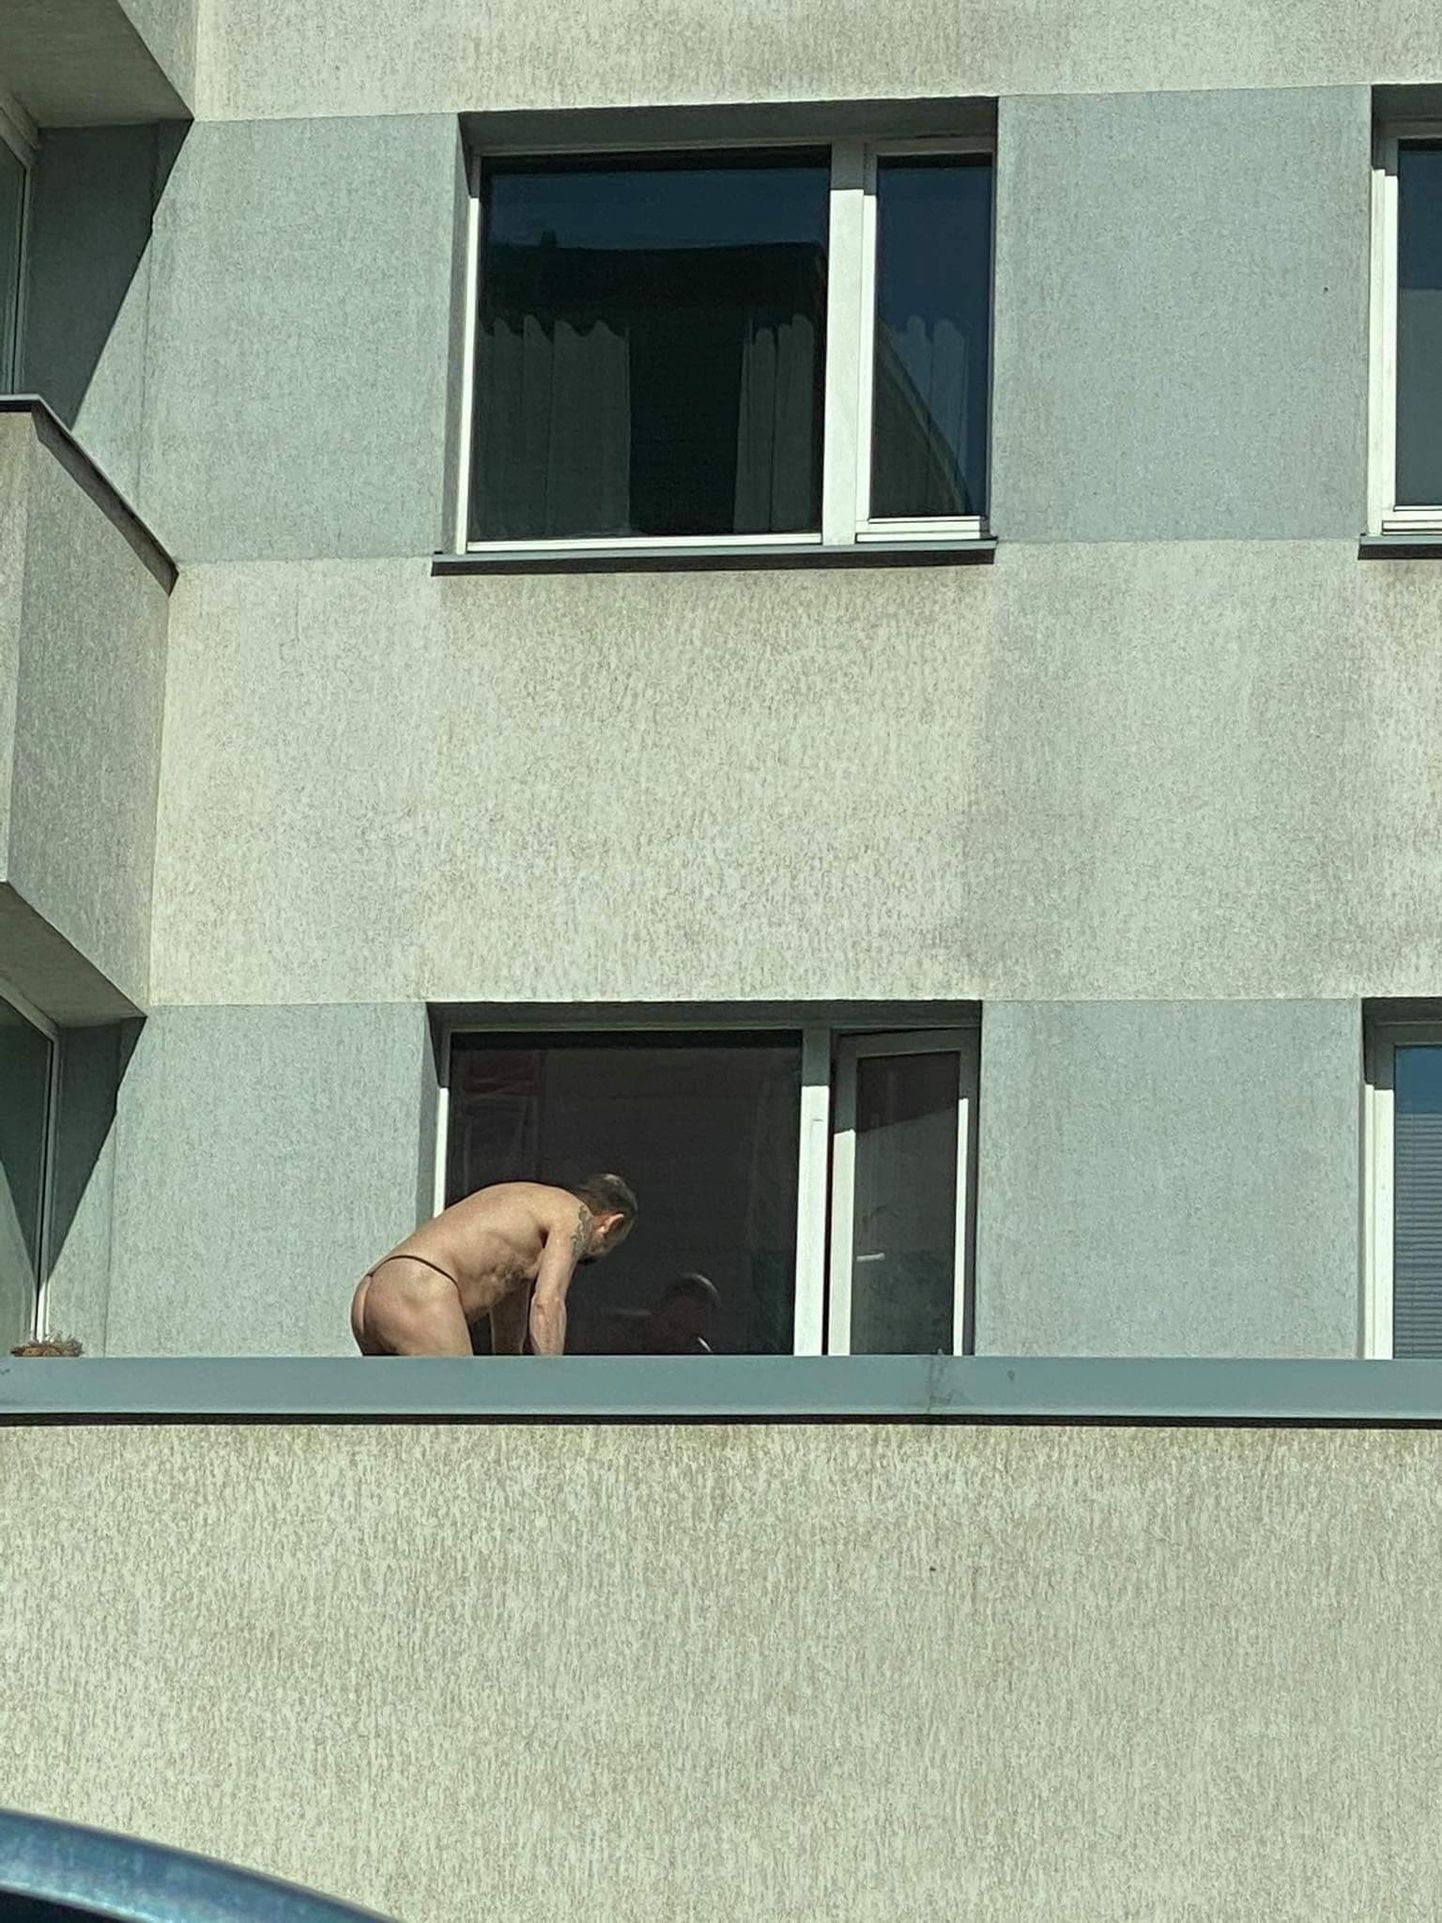 Мужчина практически голышом моет окна